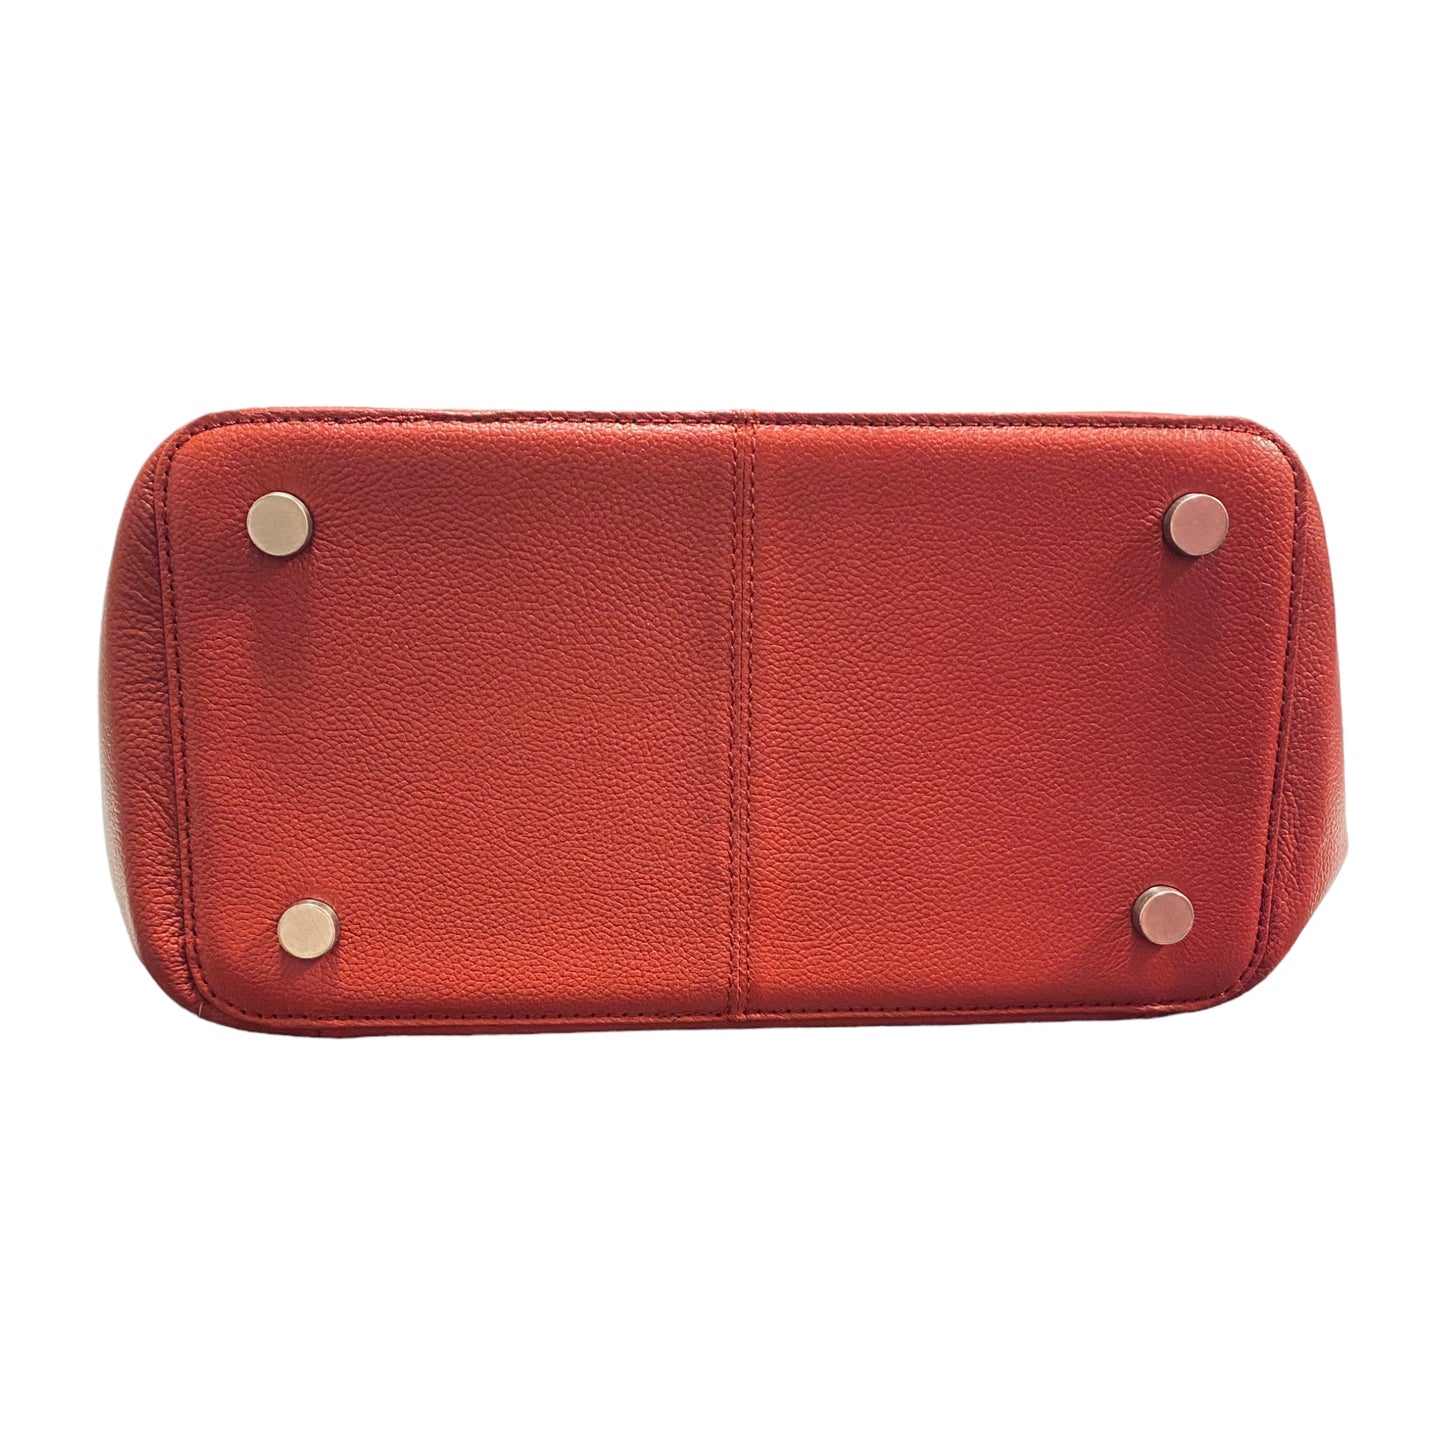 Handbag Leather By ELLA SIMONE Size: Large